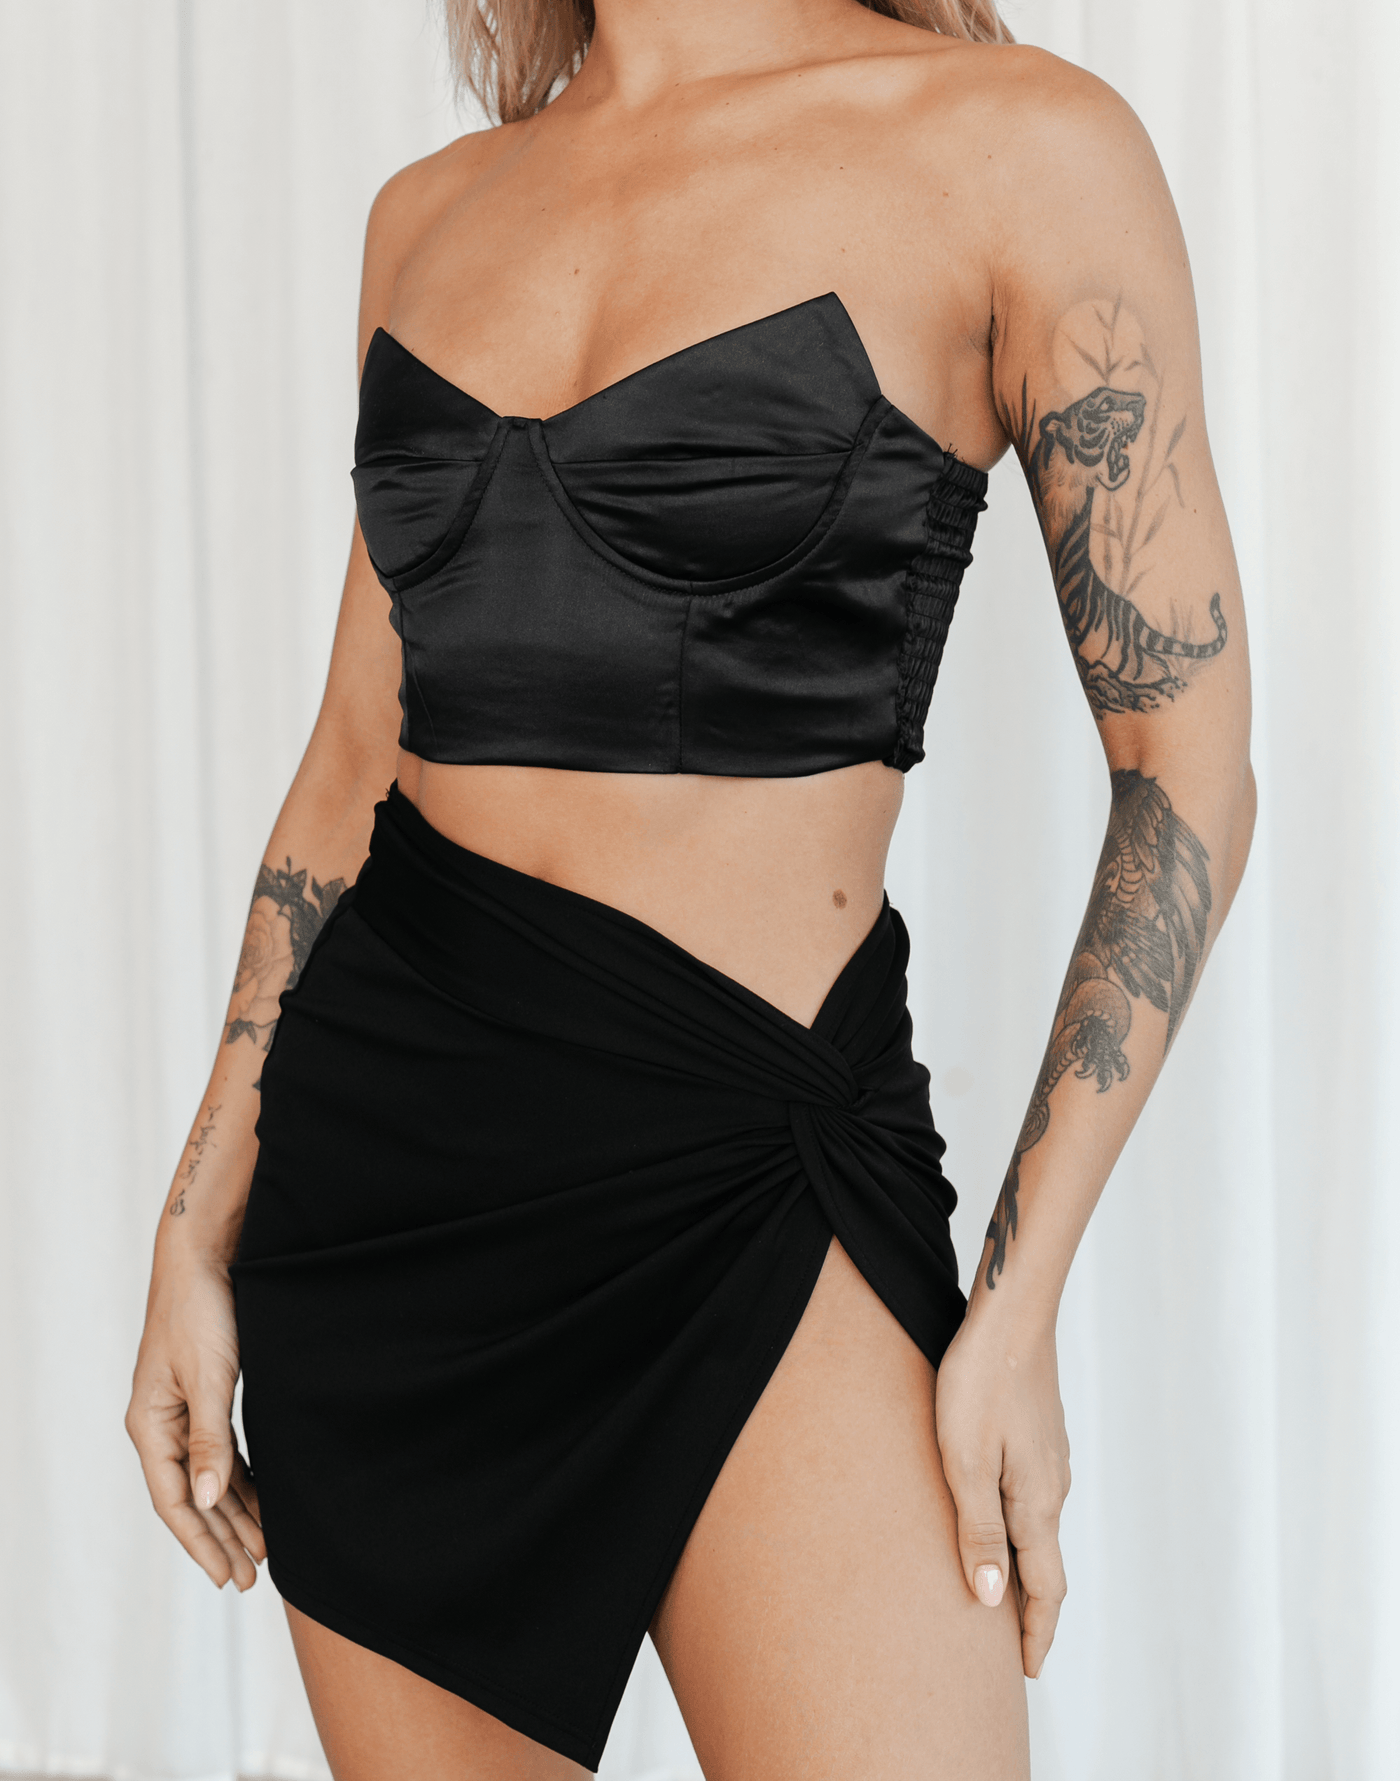 Chloe Mini Skirt (Black) - Black Knot Detailing Mini Skirt - Women's Skirt - Charcoal Clothing